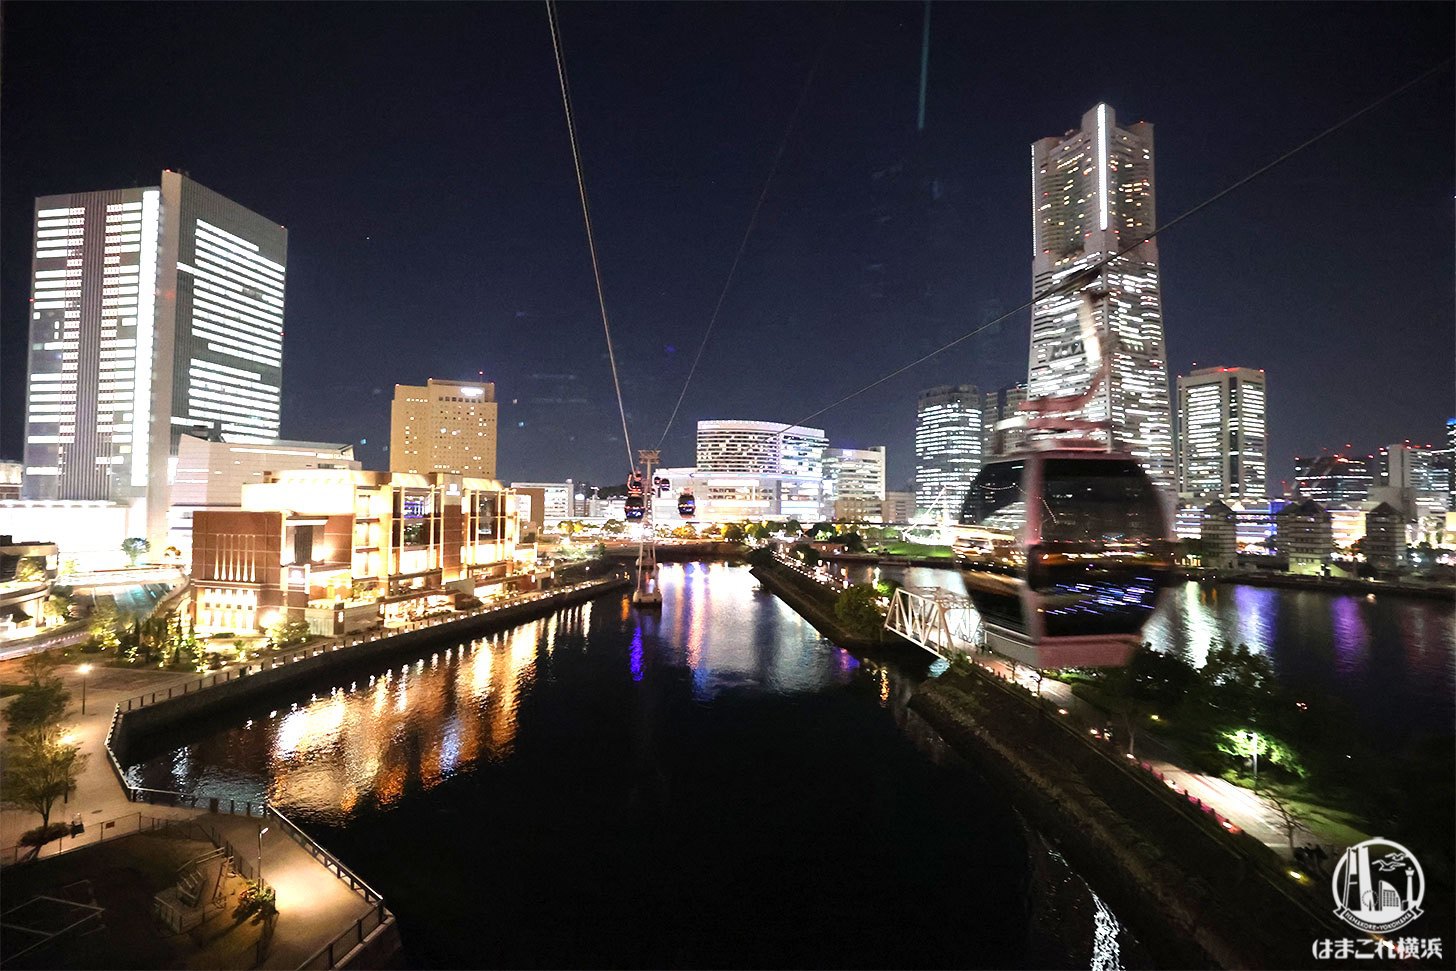 横浜ロープウェイ エアキャビン 夜は別世界 みなとみらいの新たな夜景スポット はまこれ横浜